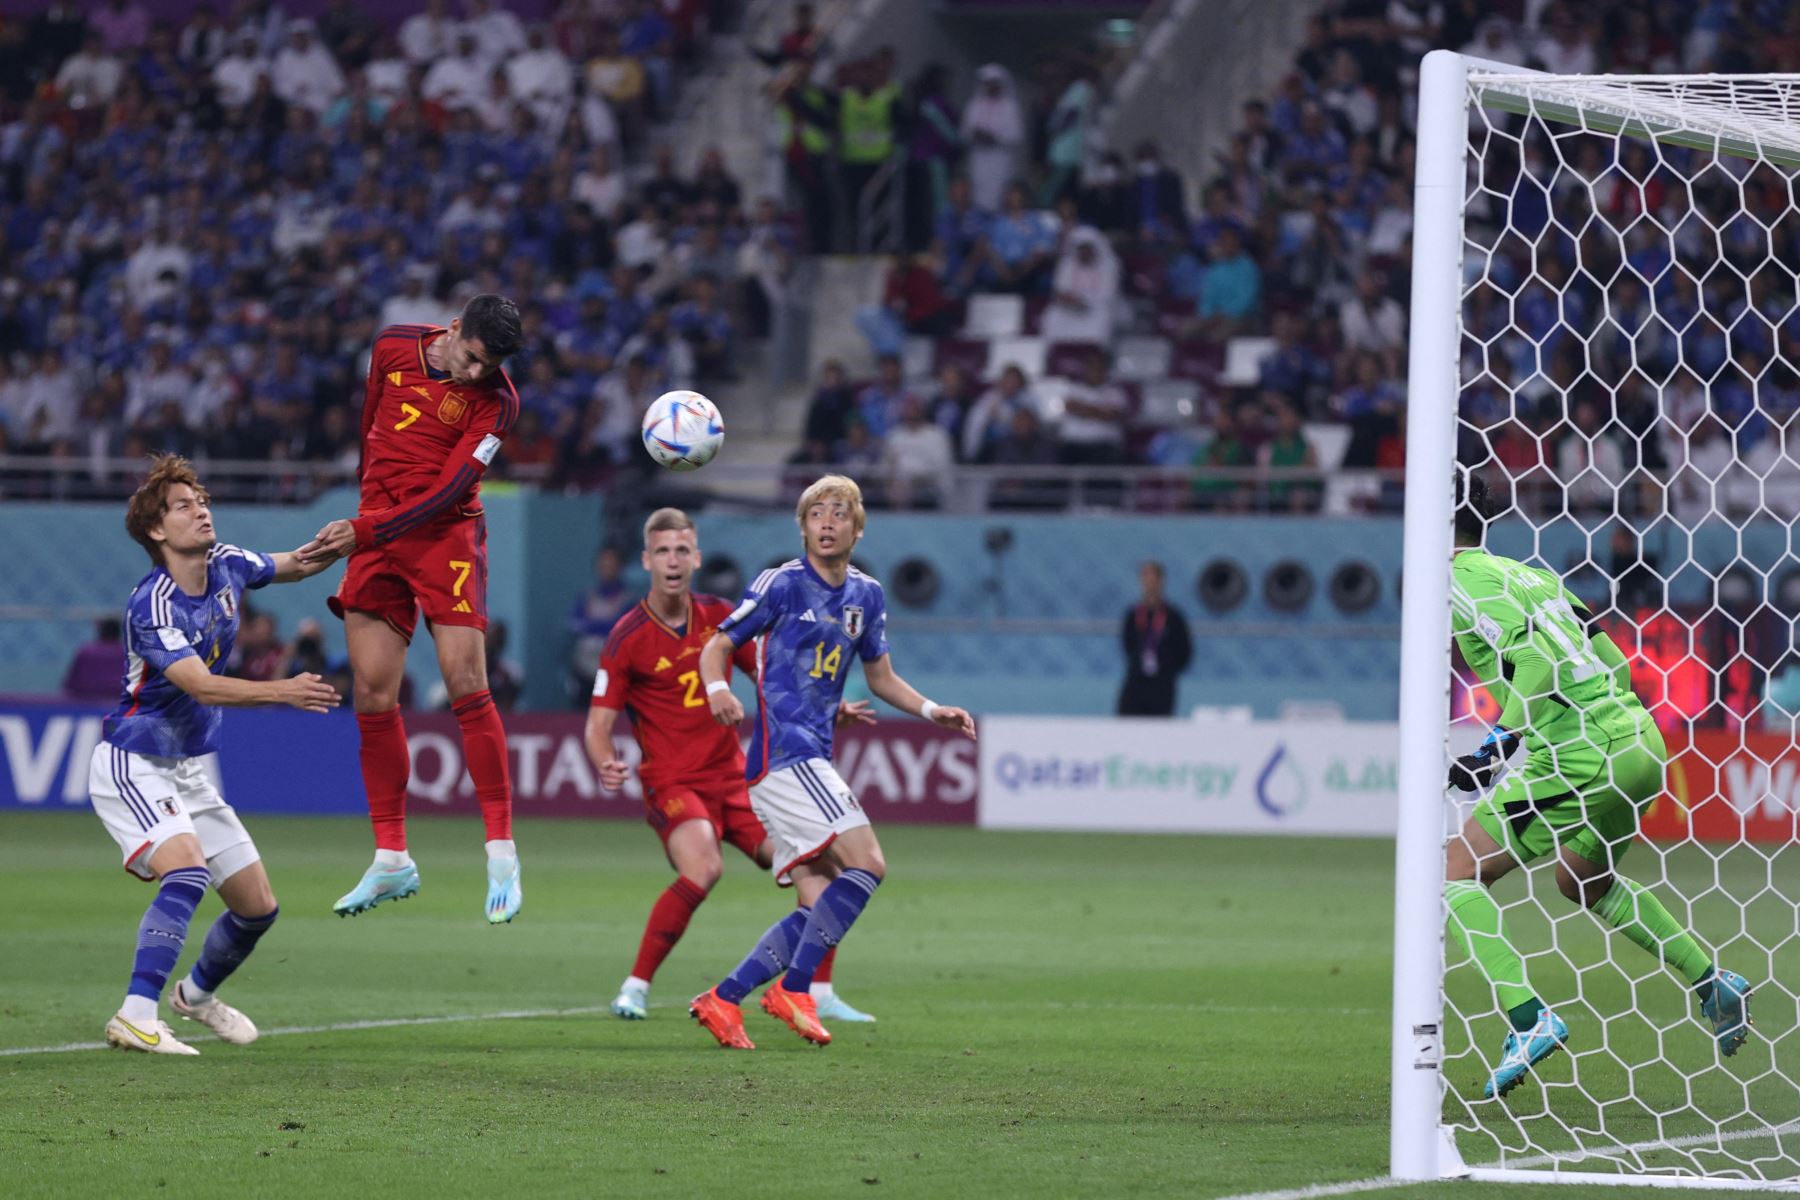 El delantero español Álvaro Morata cabecea el balón y anota el primer gol de su equipo durante el partido de fútbol del Grupo E de la Copa Mundial Qatar 2022 entre Japón y España en el Estadio Internacional Khalifa en Doha el 1 de diciembre de 2022.
Foto: AFP